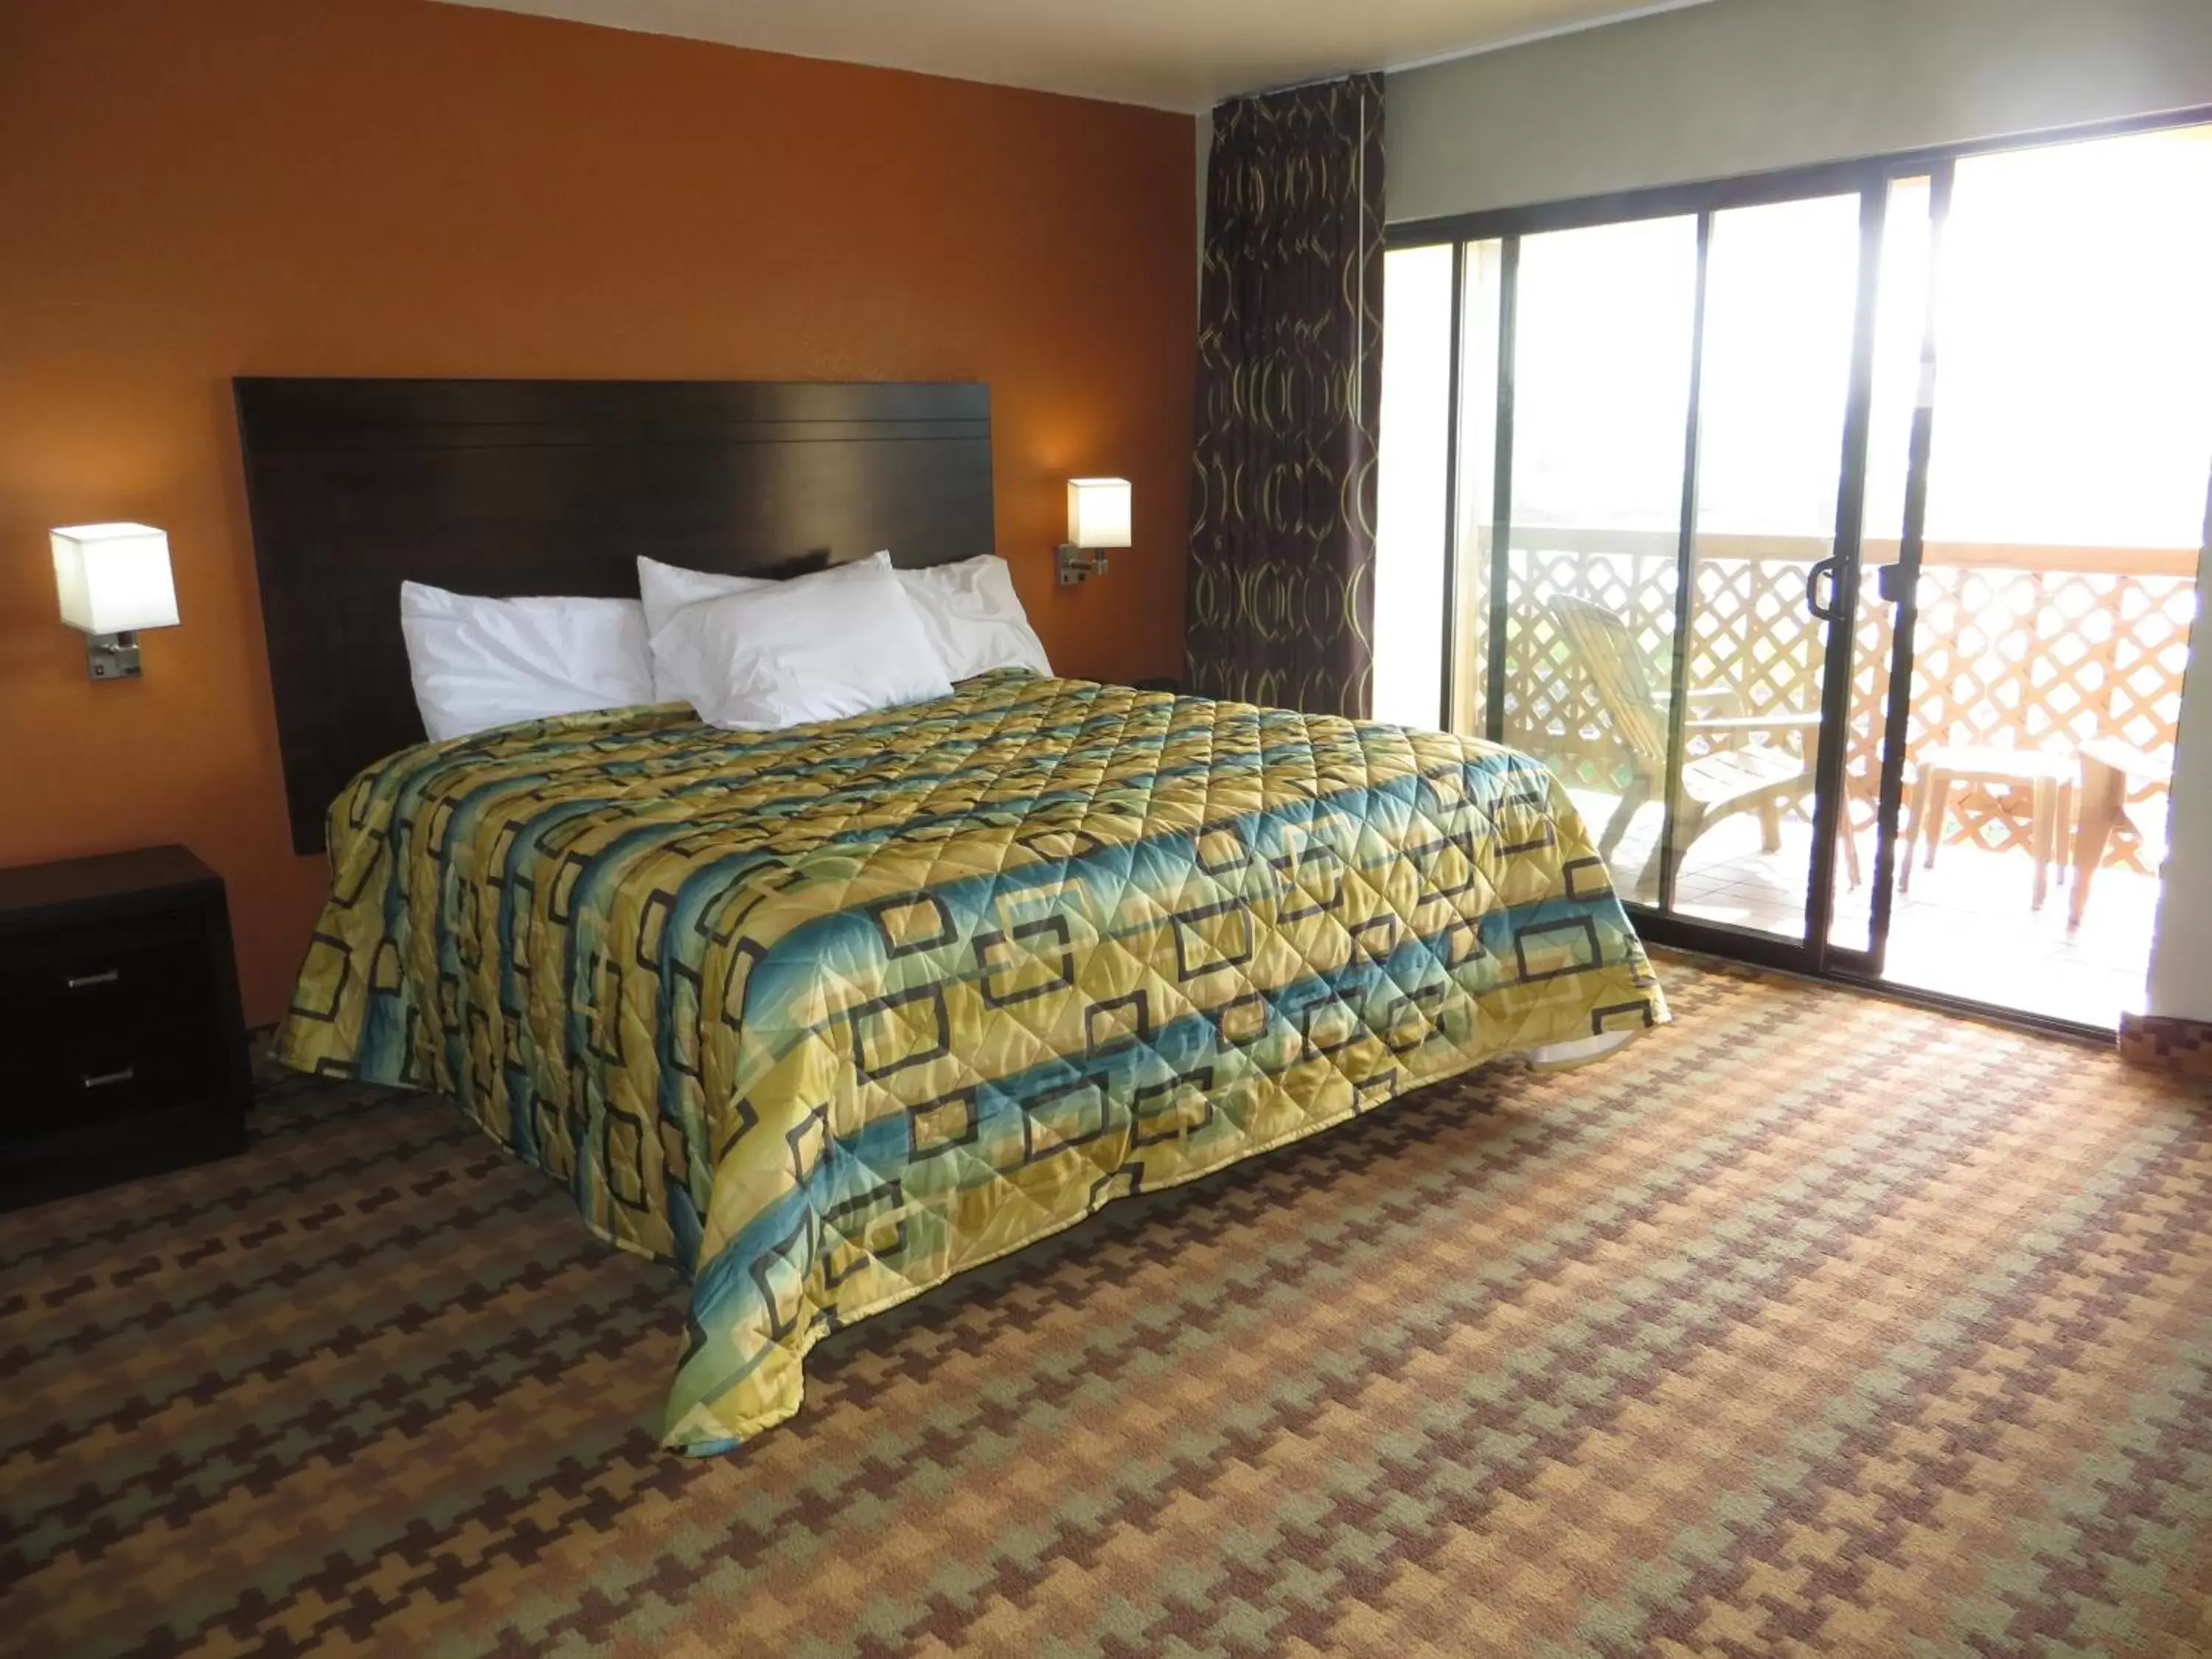 Bed in Ocean Gate Inn